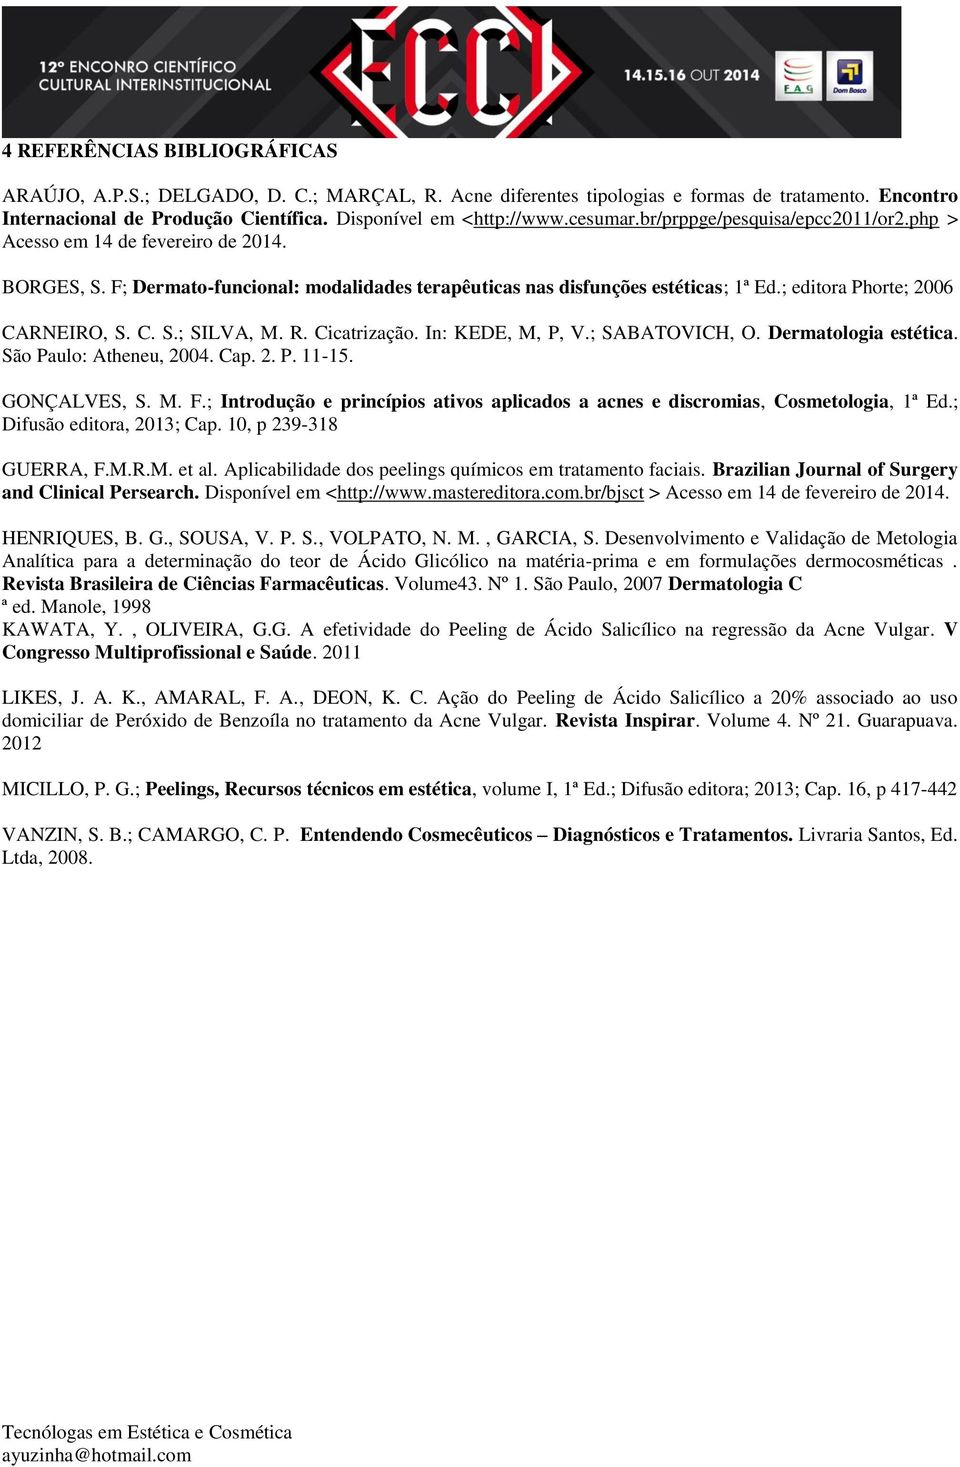 ; editora Phorte; 2006 CARNEIRO, S. C. S.; SILVA, M. R. Cicatrização. In: KEDE, M, P, V.; SABATOVICH, O. Dermatologia estética. São Paulo: Atheneu, 2004. Cap. 2. P. 11-15. GONÇALVES, S. M. F.